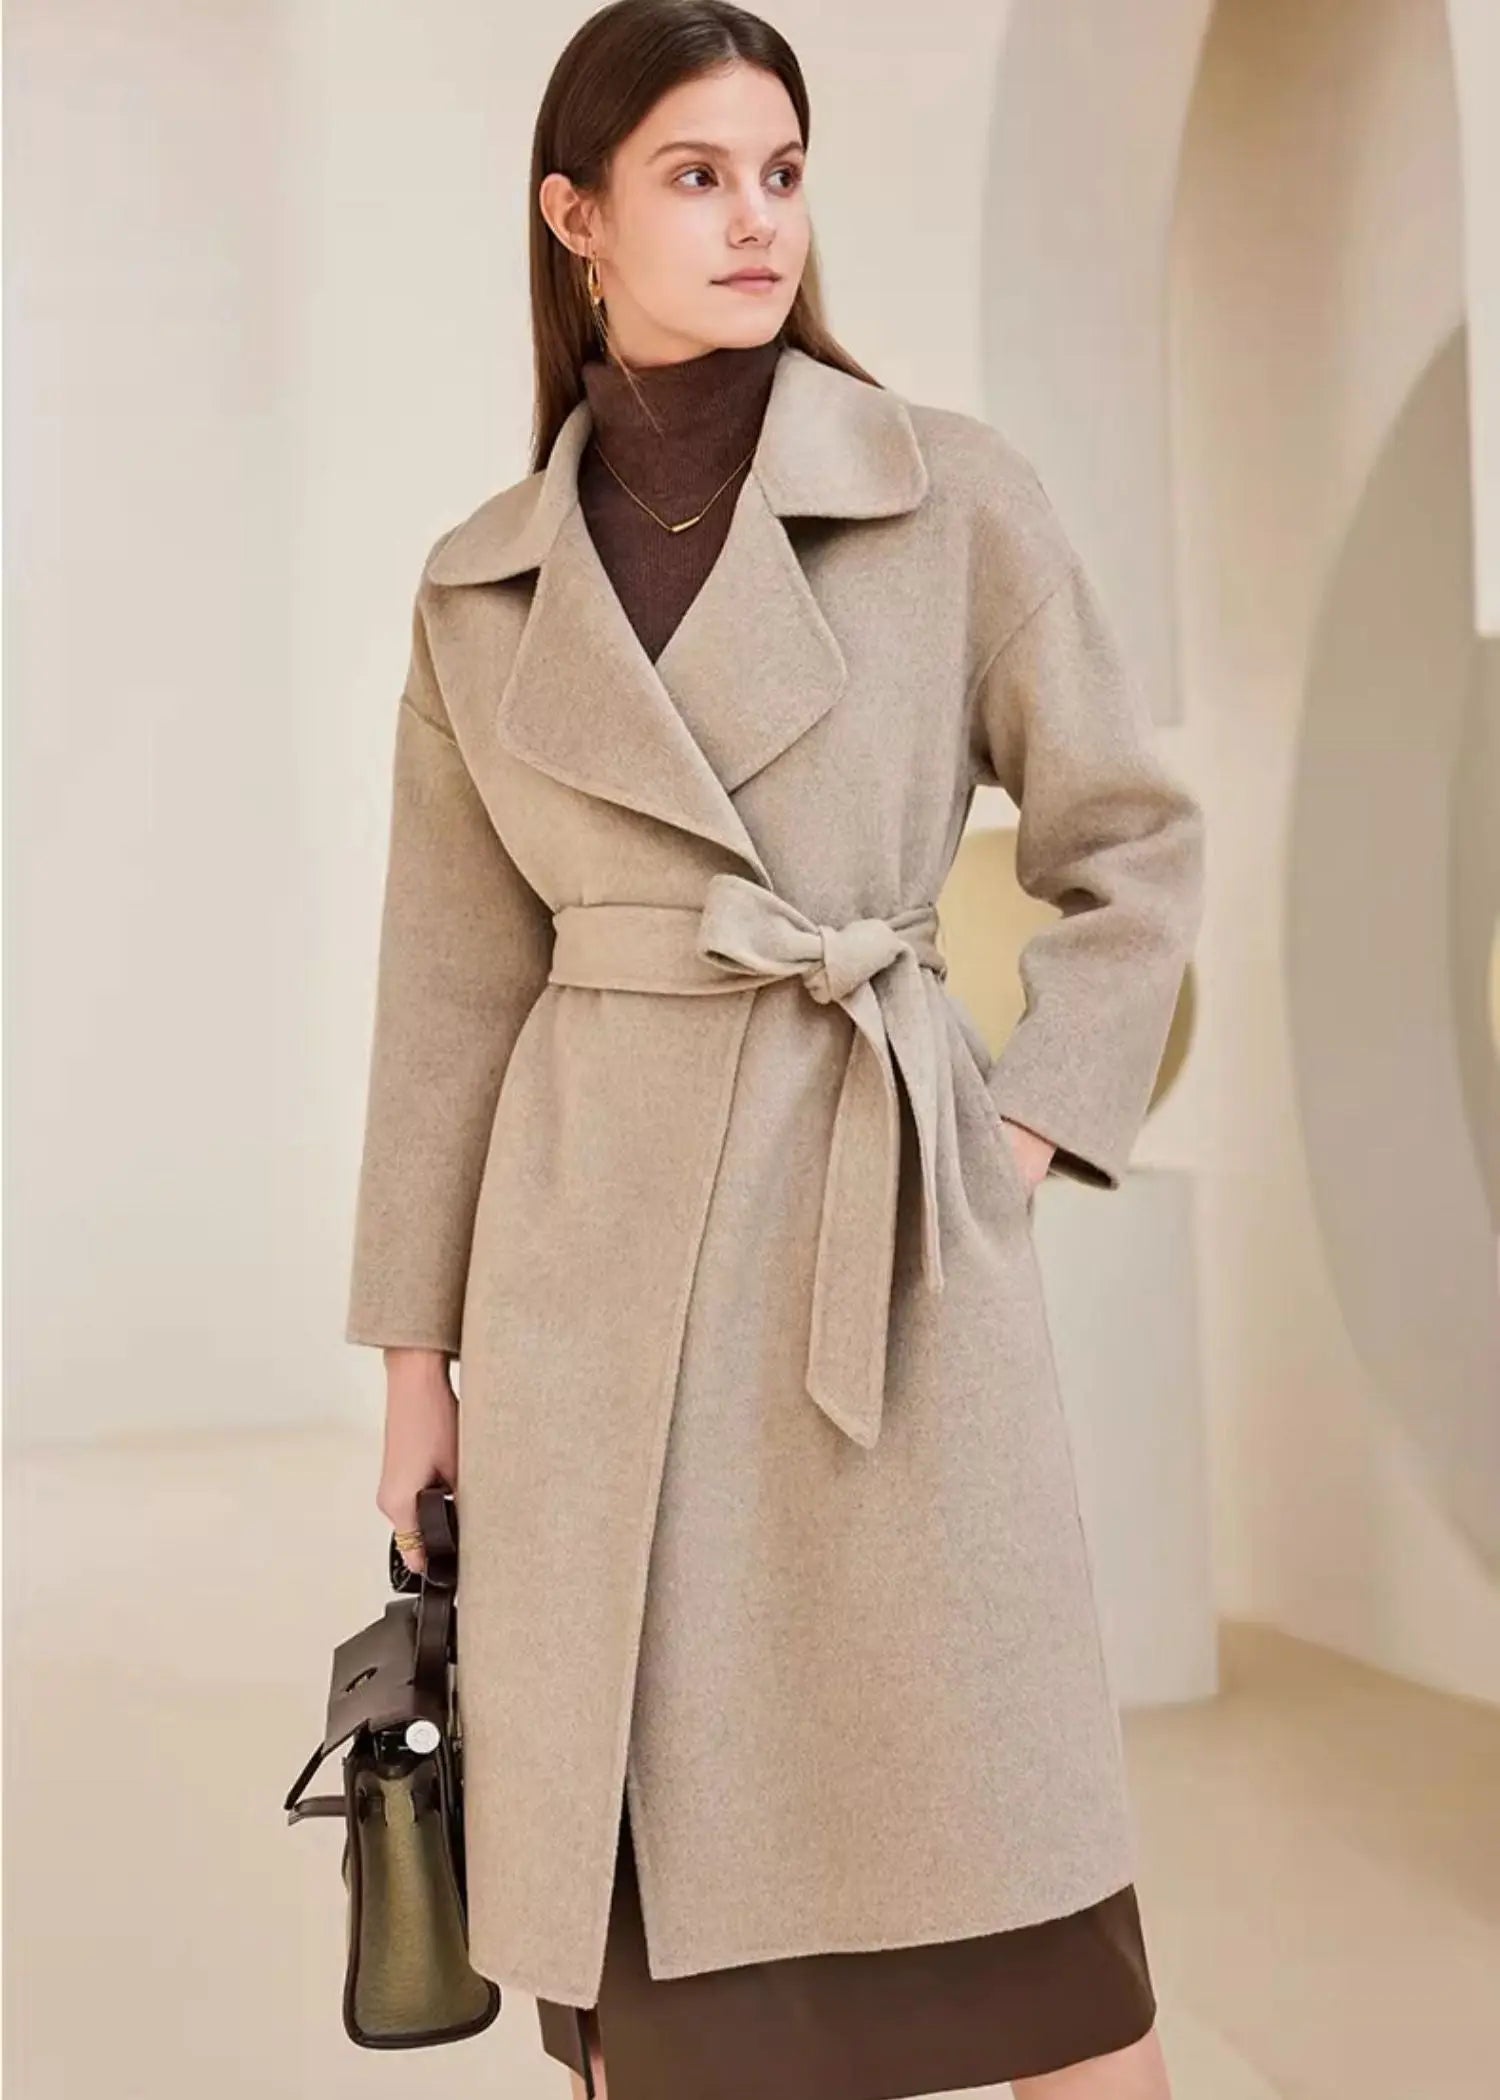 Vivian Seven Womens Wool Coat